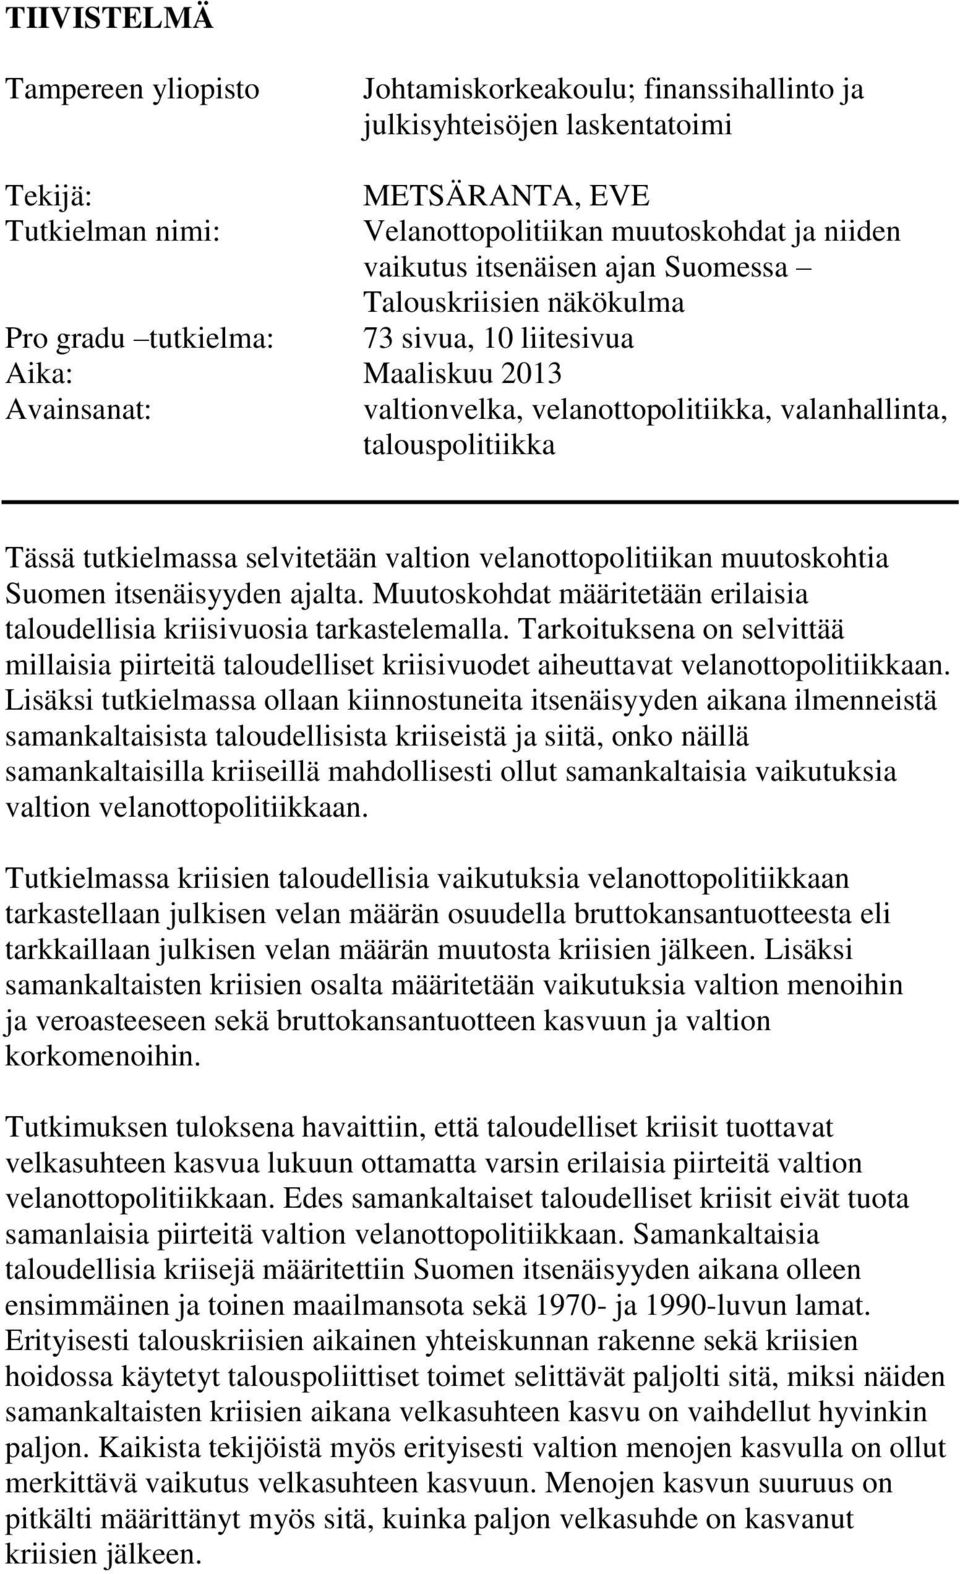 Tässä tutkielmassa selvitetään valtion velanottopolitiikan muutoskohtia Suomen itsenäisyyden ajalta. Muutoskohdat määritetään erilaisia taloudellisia kriisivuosia tarkastelemalla.